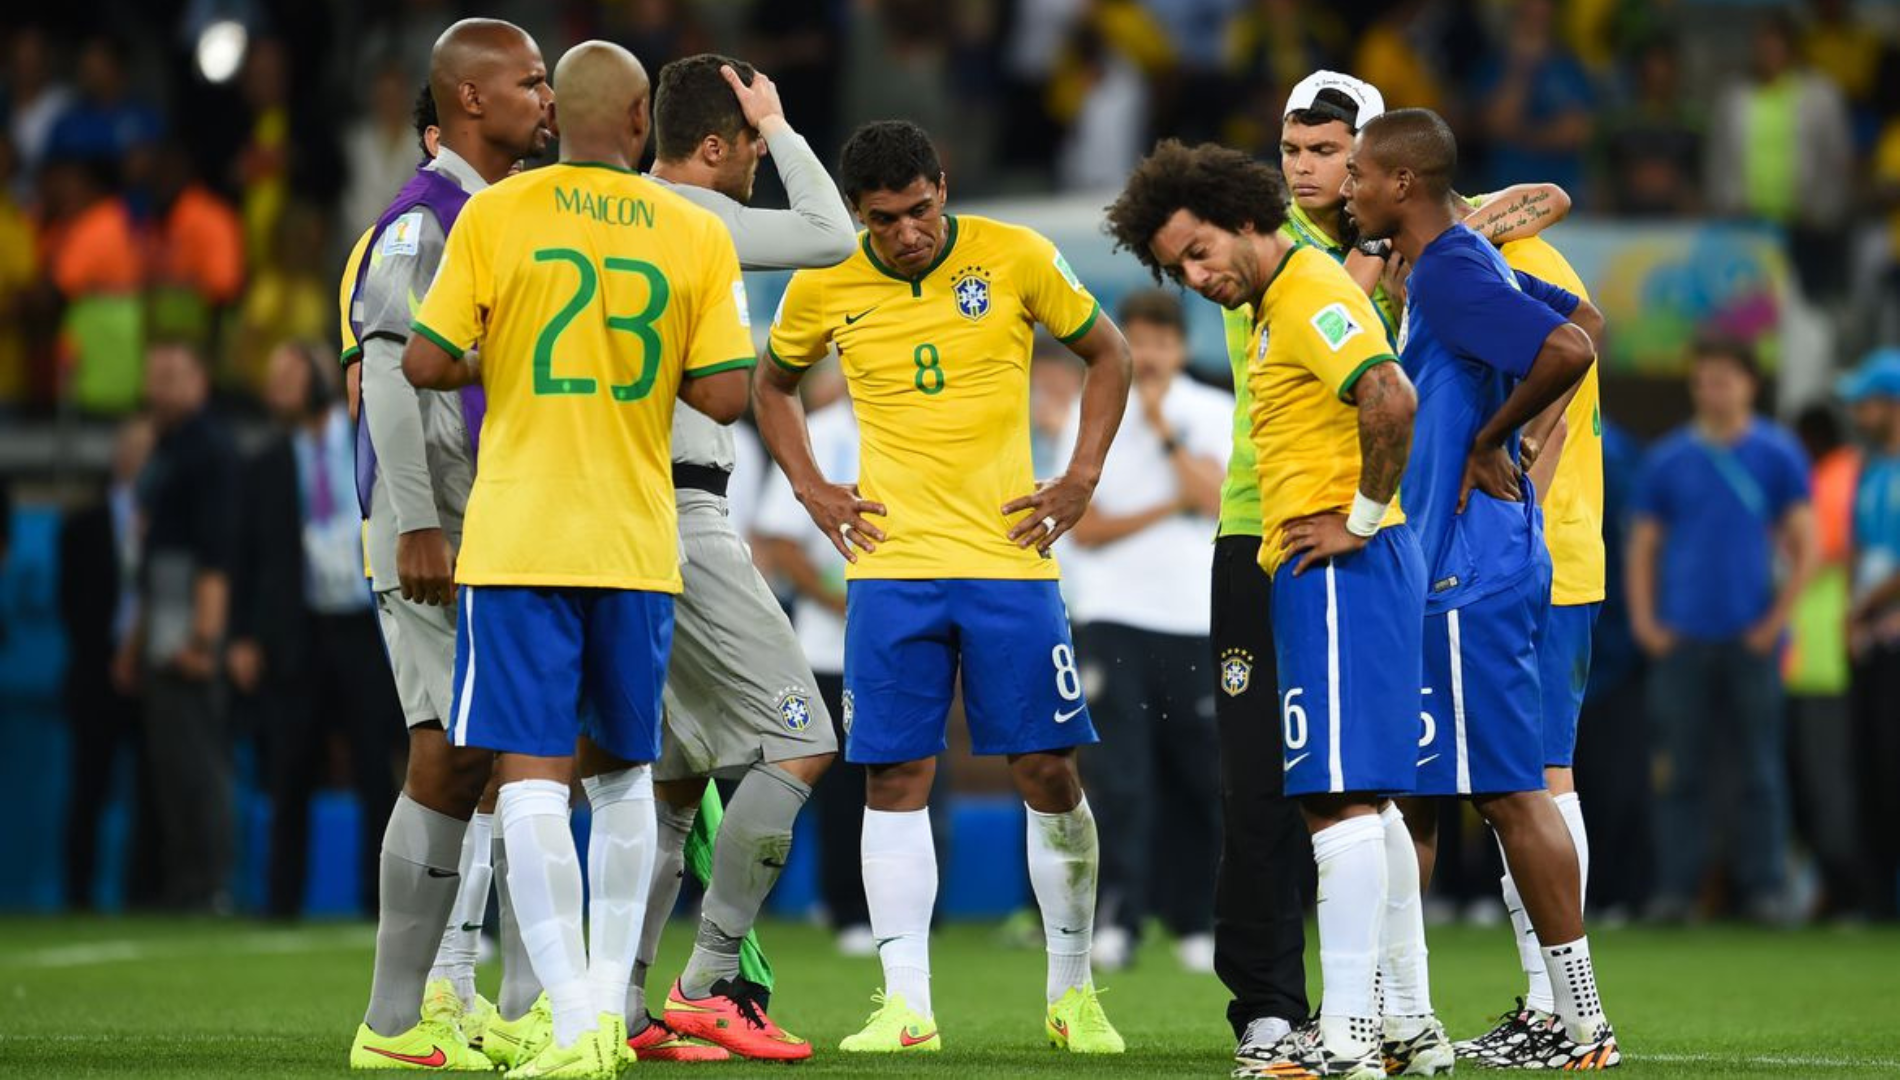 Jogadores da seleção brasileira estão tristes após perder para a seleção alemã na Copa do Mundo de 2014